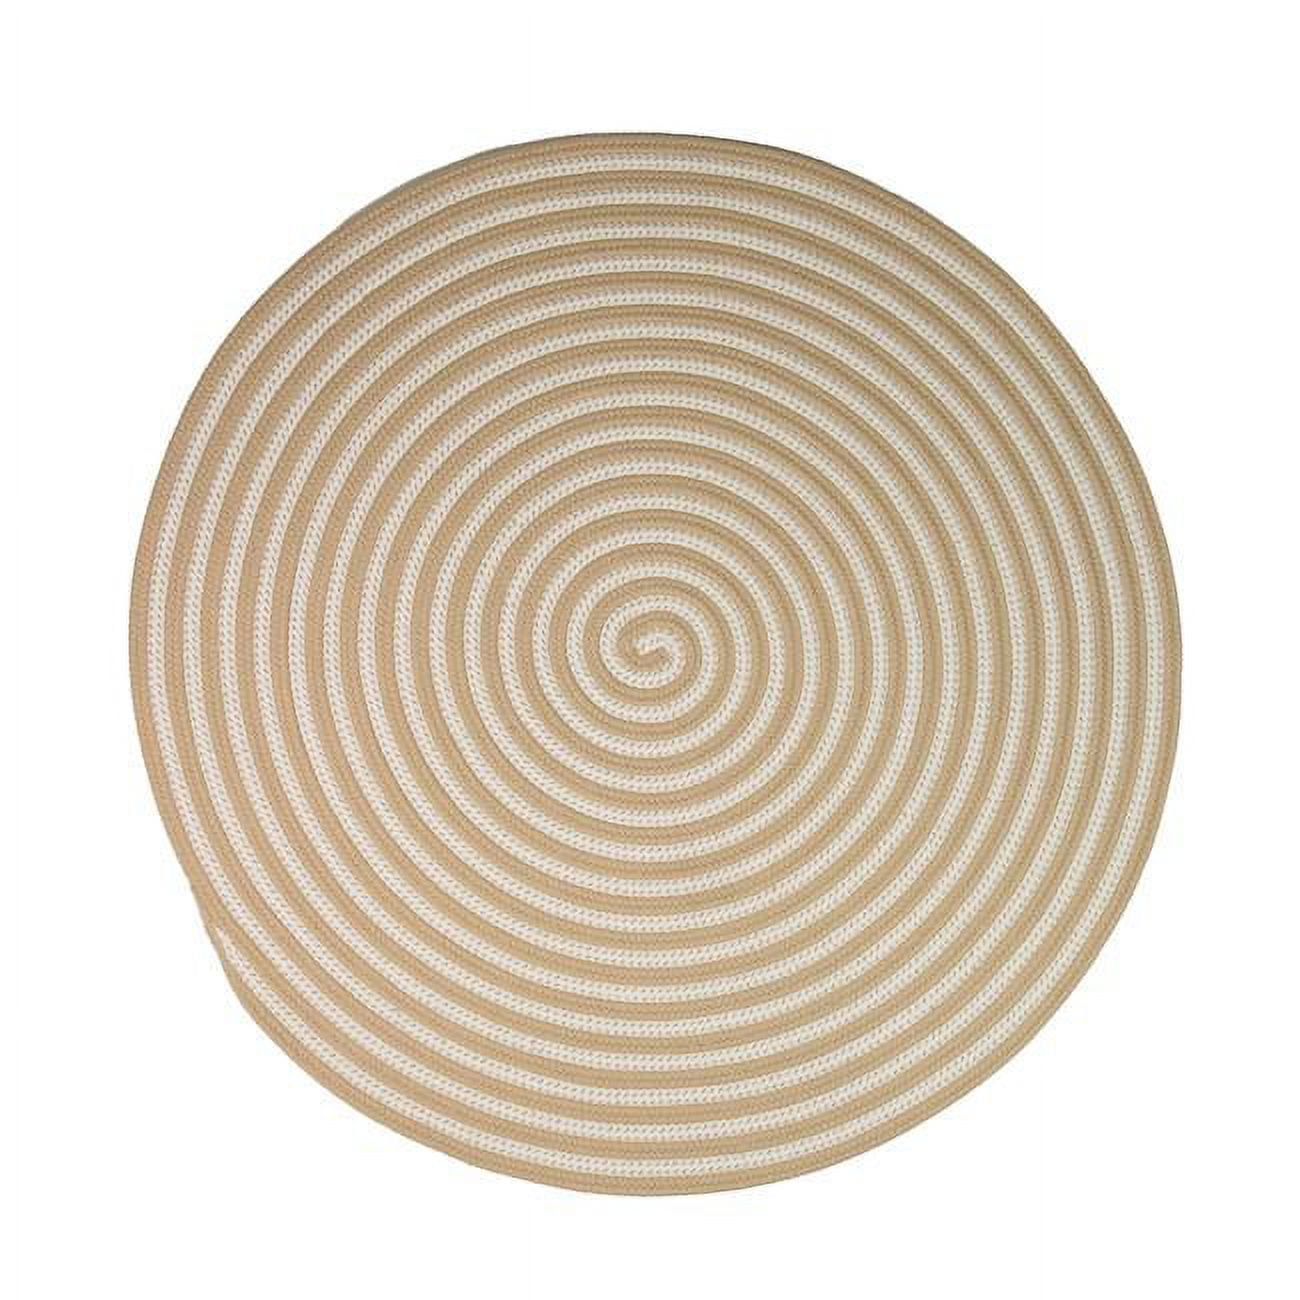 55 x 55 in. Tiki Spiral Doormats, Sandstorm -  Designs-Done-Right, DE2838043